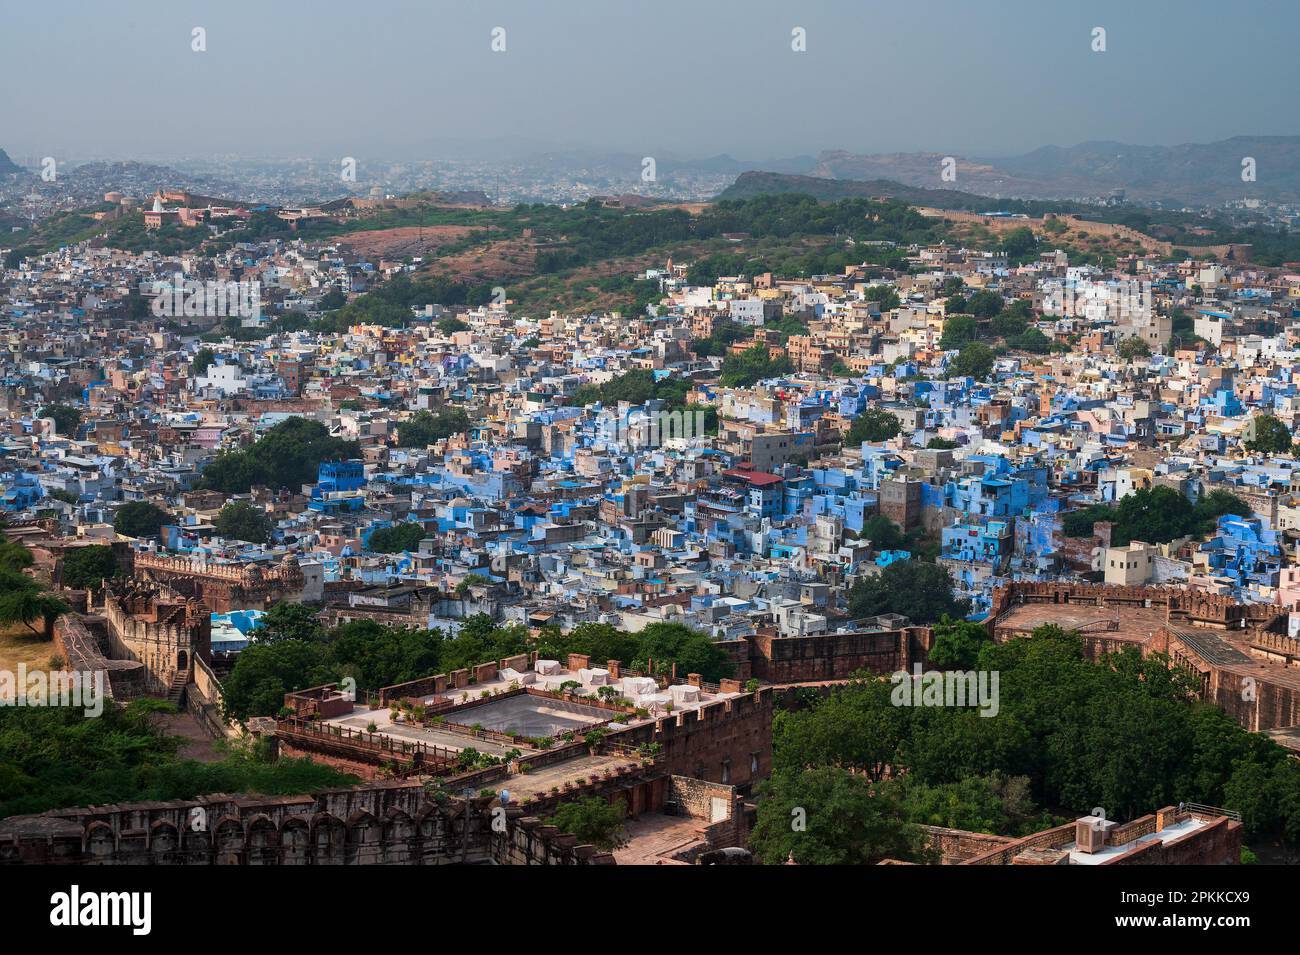 Vue aérienne de la ville bleue, Jodhpur, Rajasthan, Inde. Les brahmins résident adorent Lord Shiva et peint leurs maisons en bleu comme le bleu est sa couleur préférée. Banque D'Images